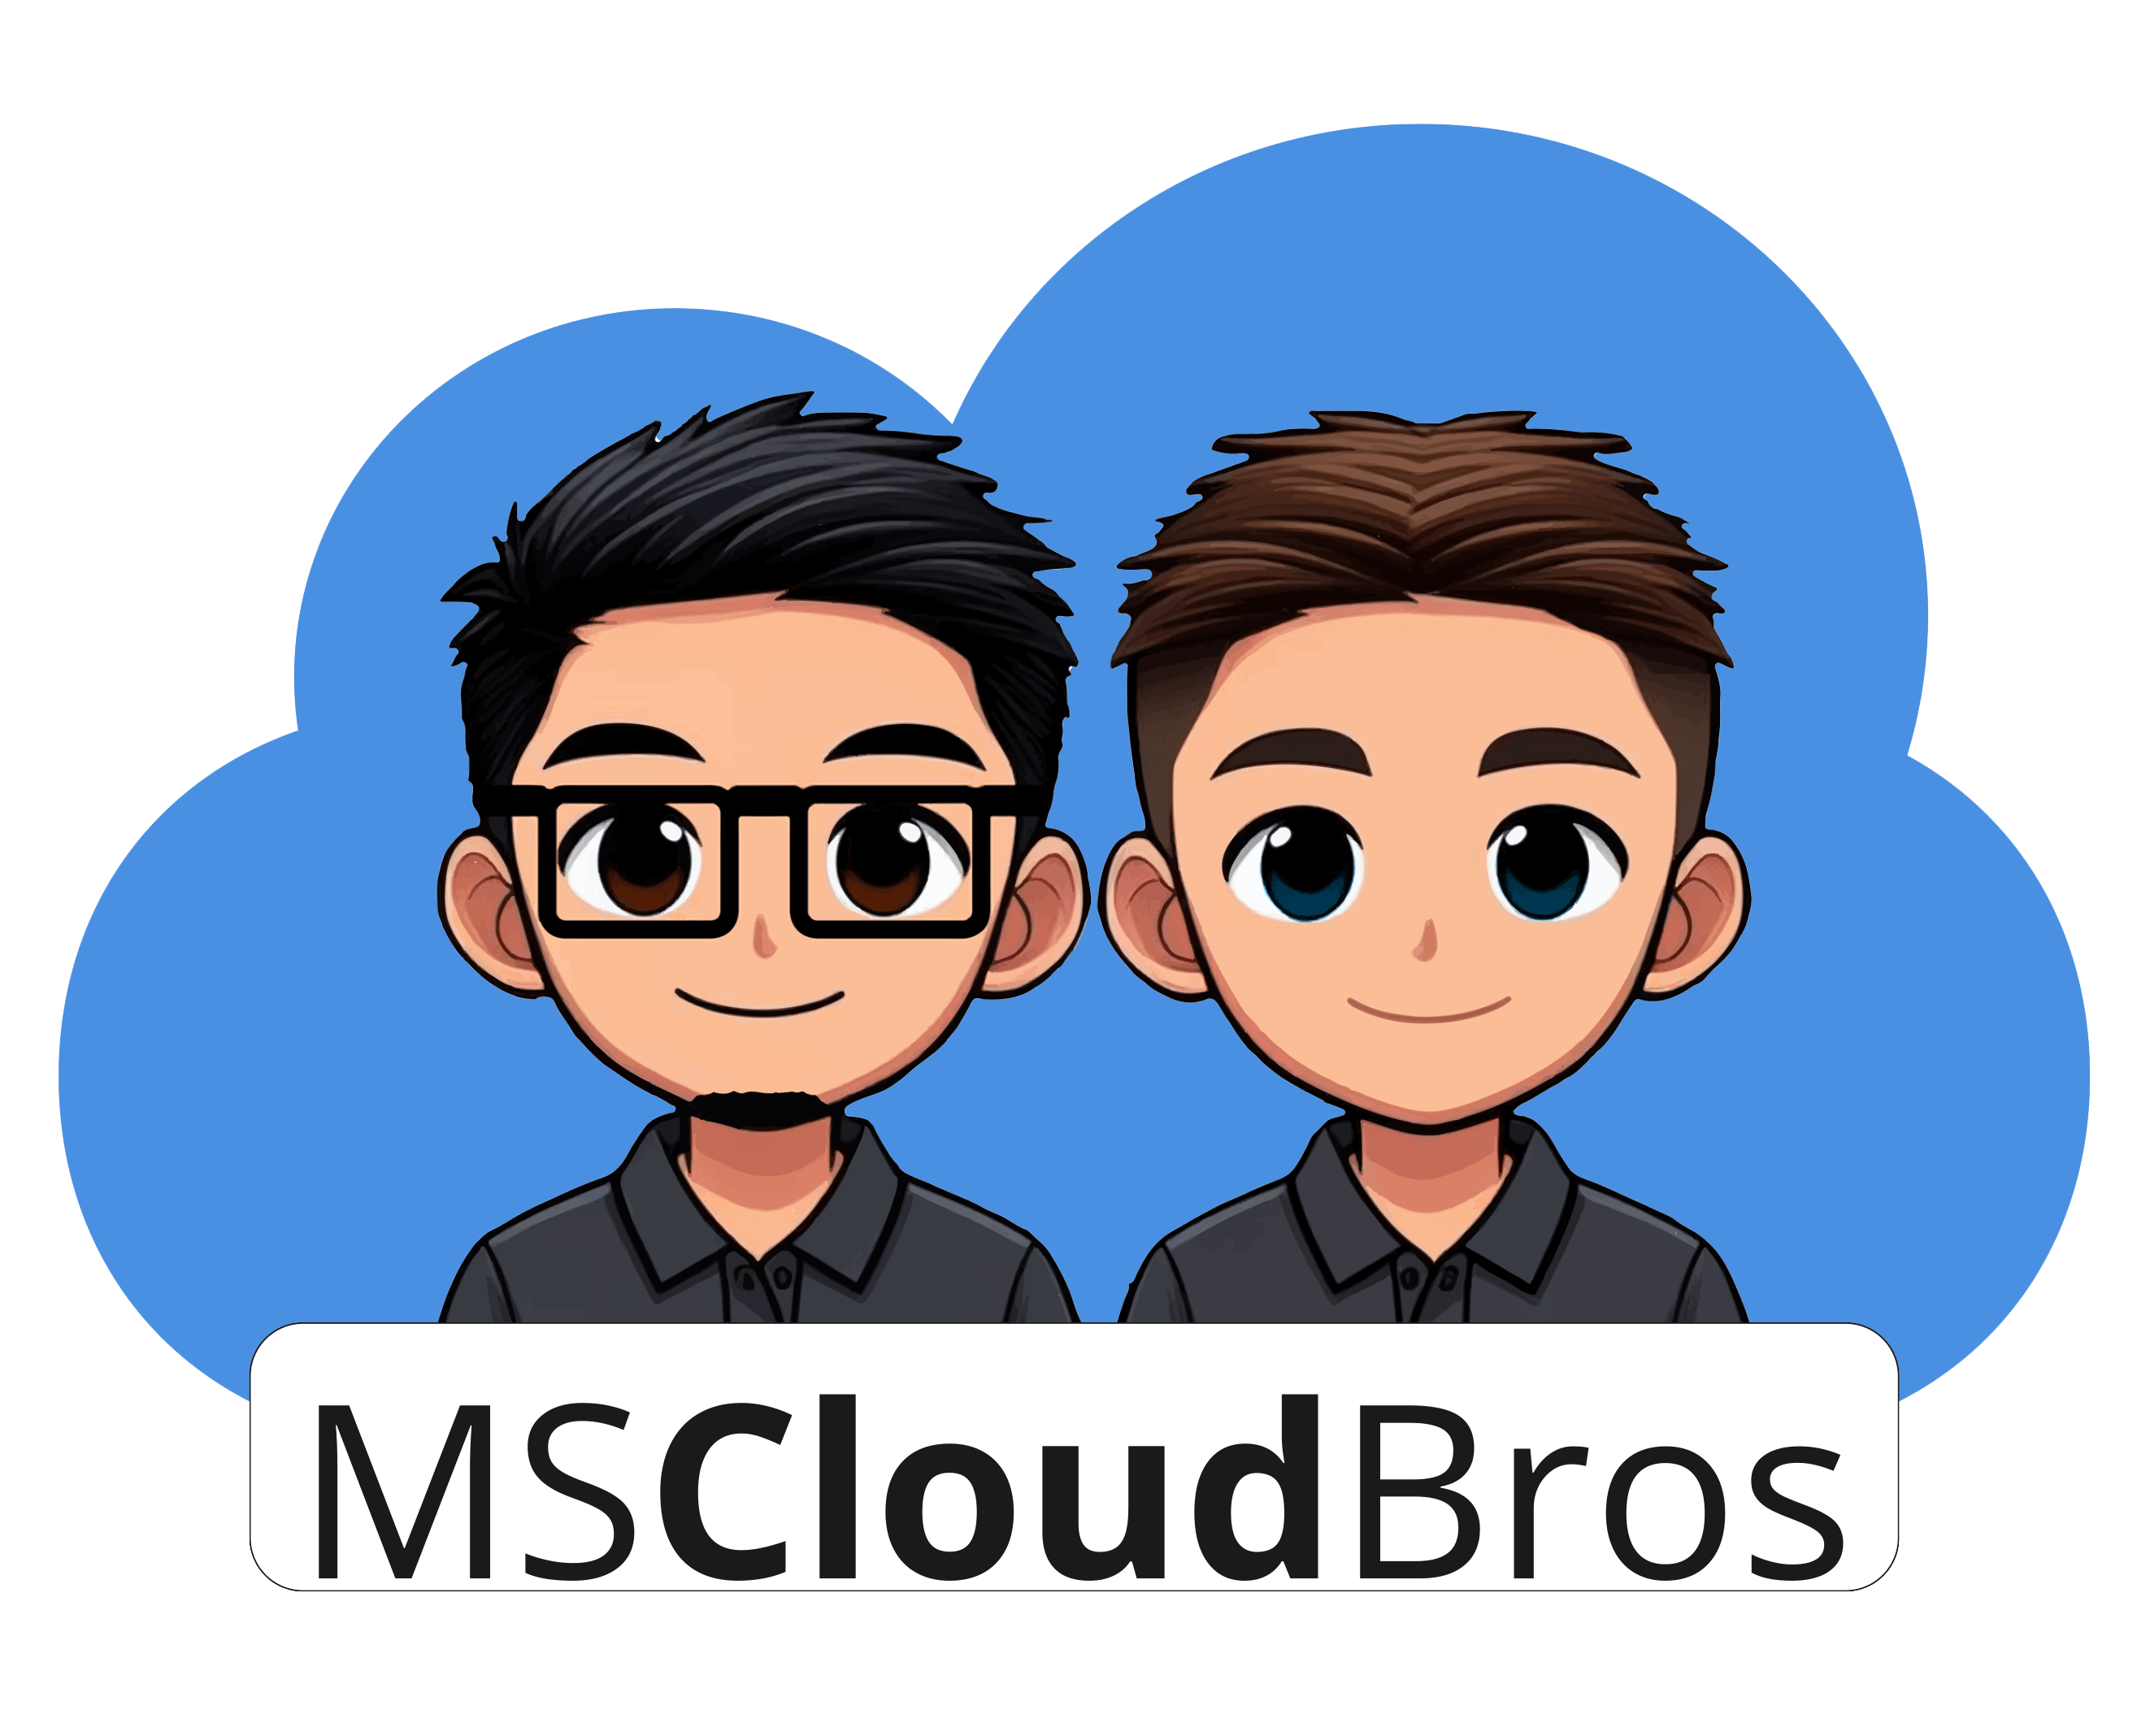 MS Cloud Bros